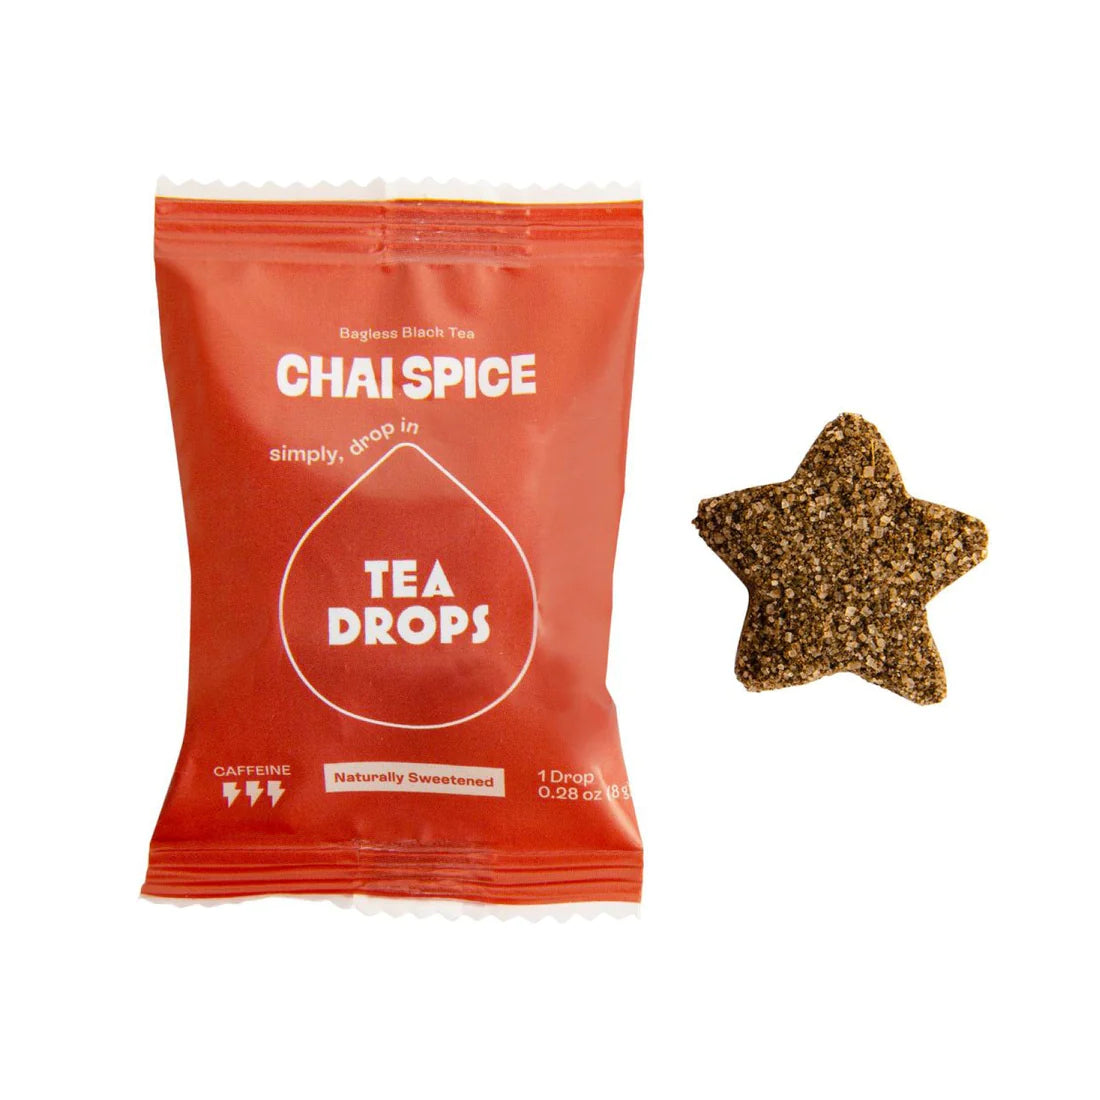 Tea Drops - Bagless Black Tea - Chai Spice (1 drop)